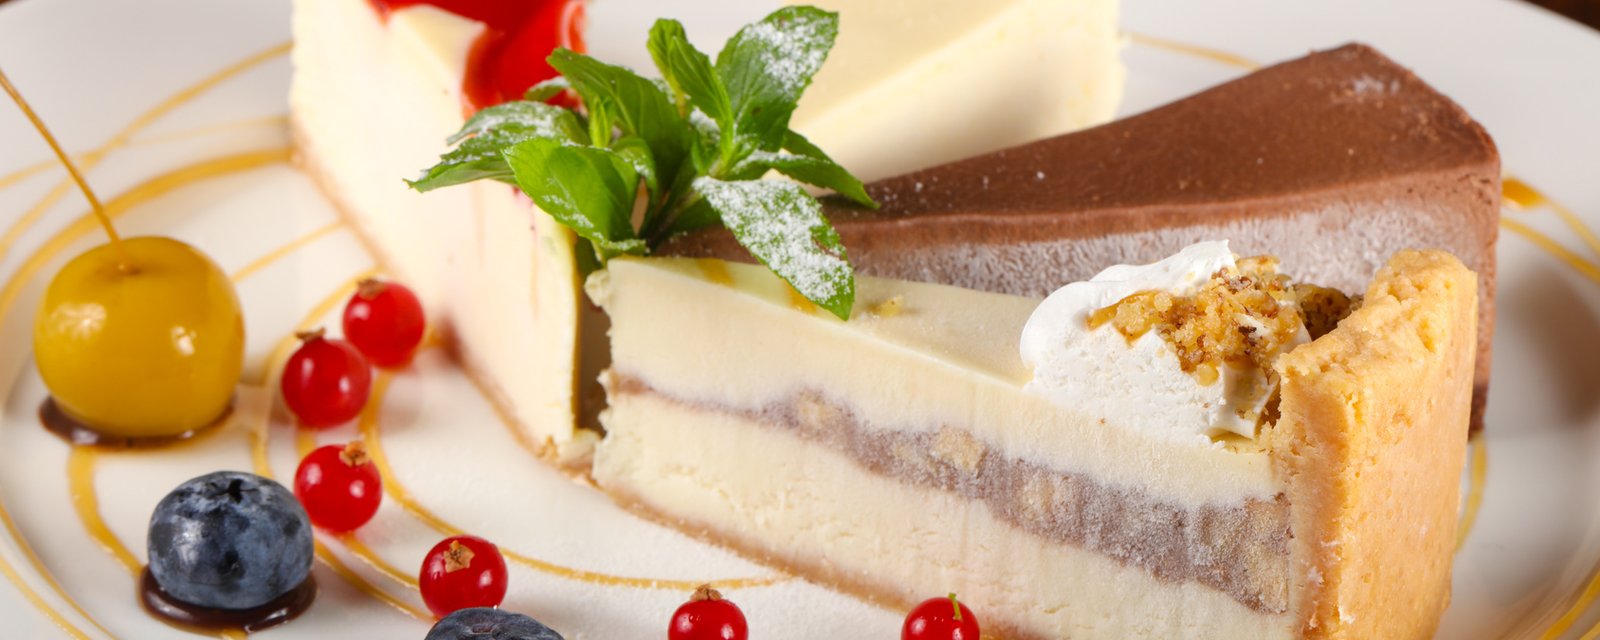 16 trucs essentiels pour cuisiner le meilleur gâteau au fromage du monde!